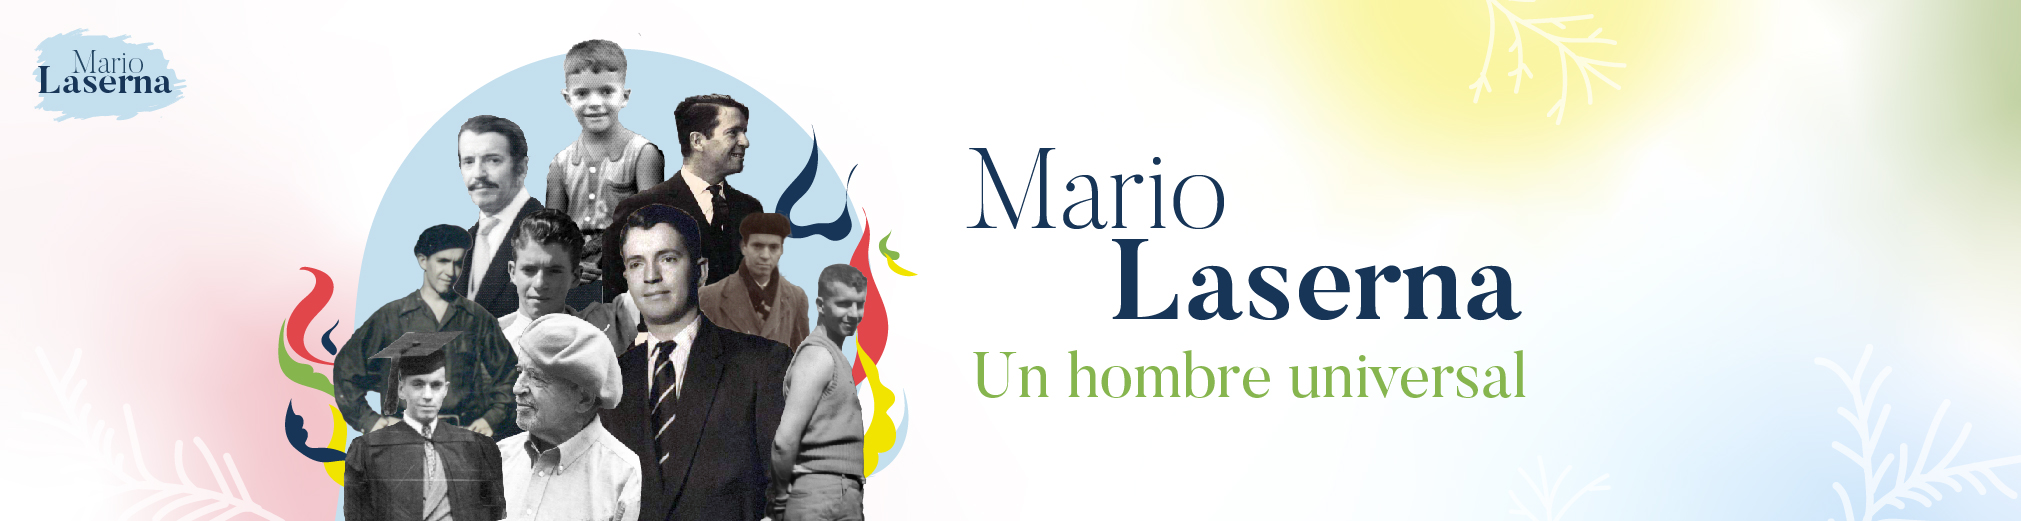 Banner inicio página web Mario Laserna, fundador de la Universidad de los Andes y hombre universal